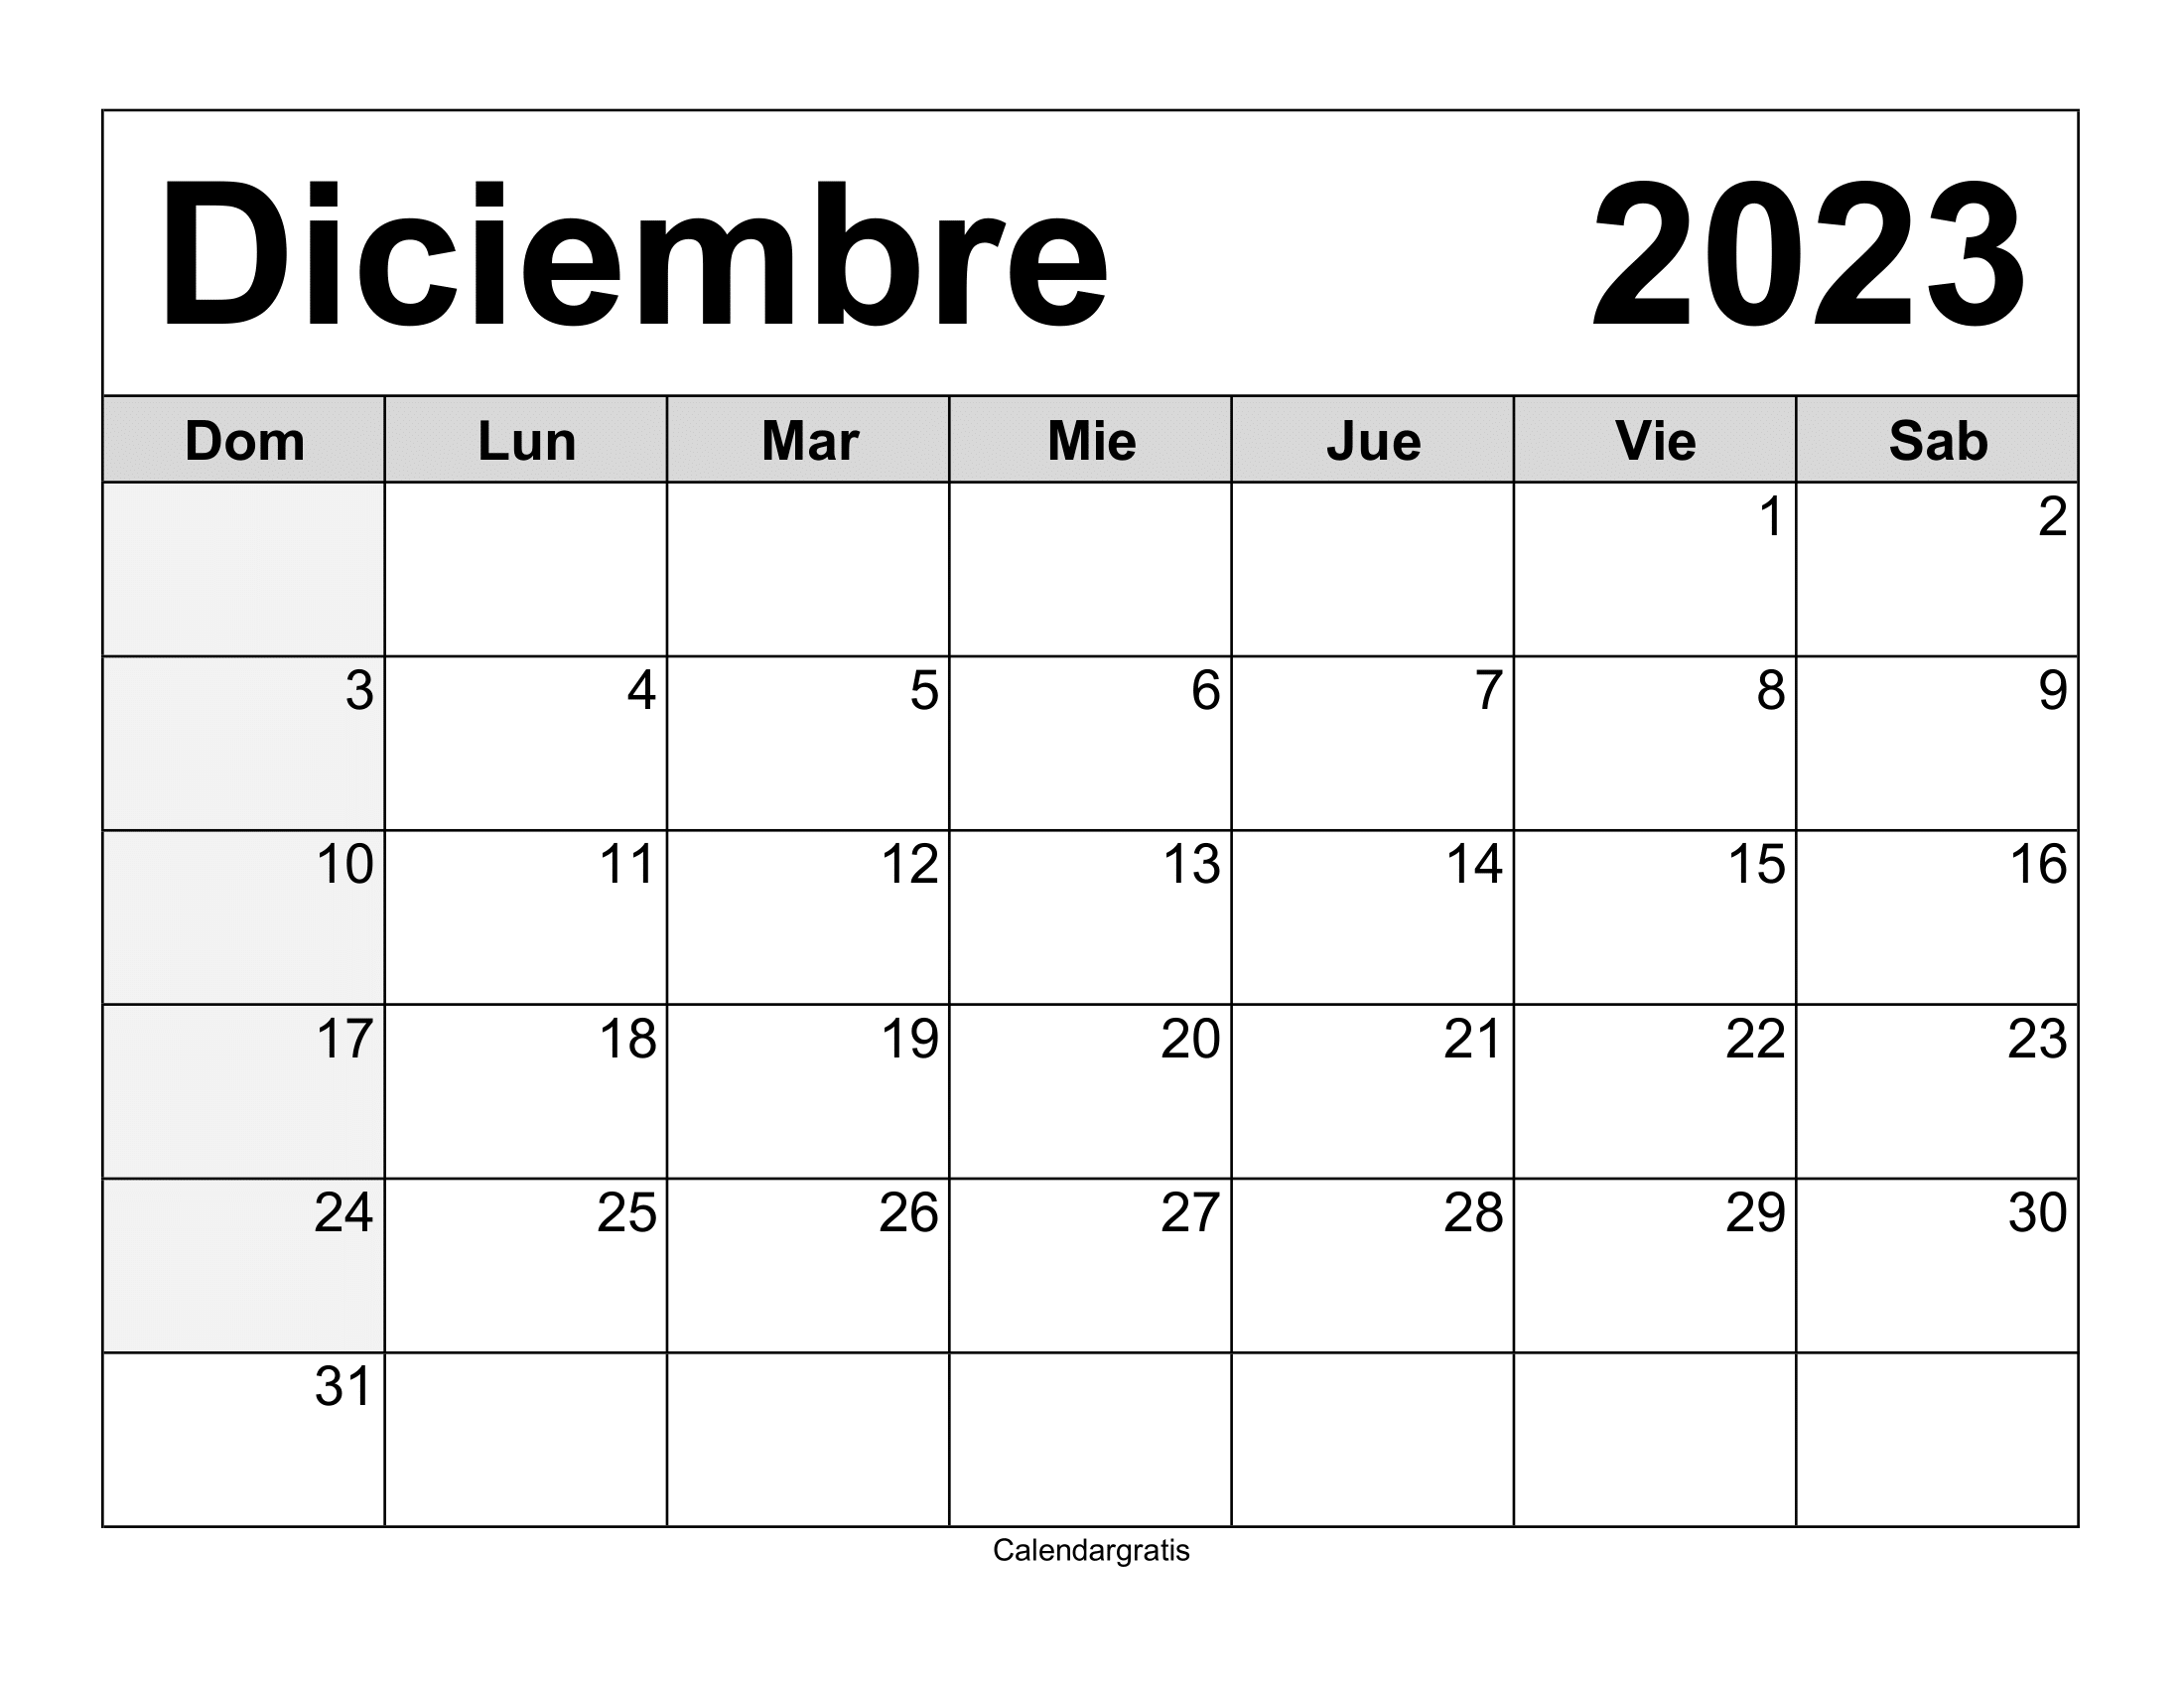 Descarga tu calendario diciembre 2023 para imprimir